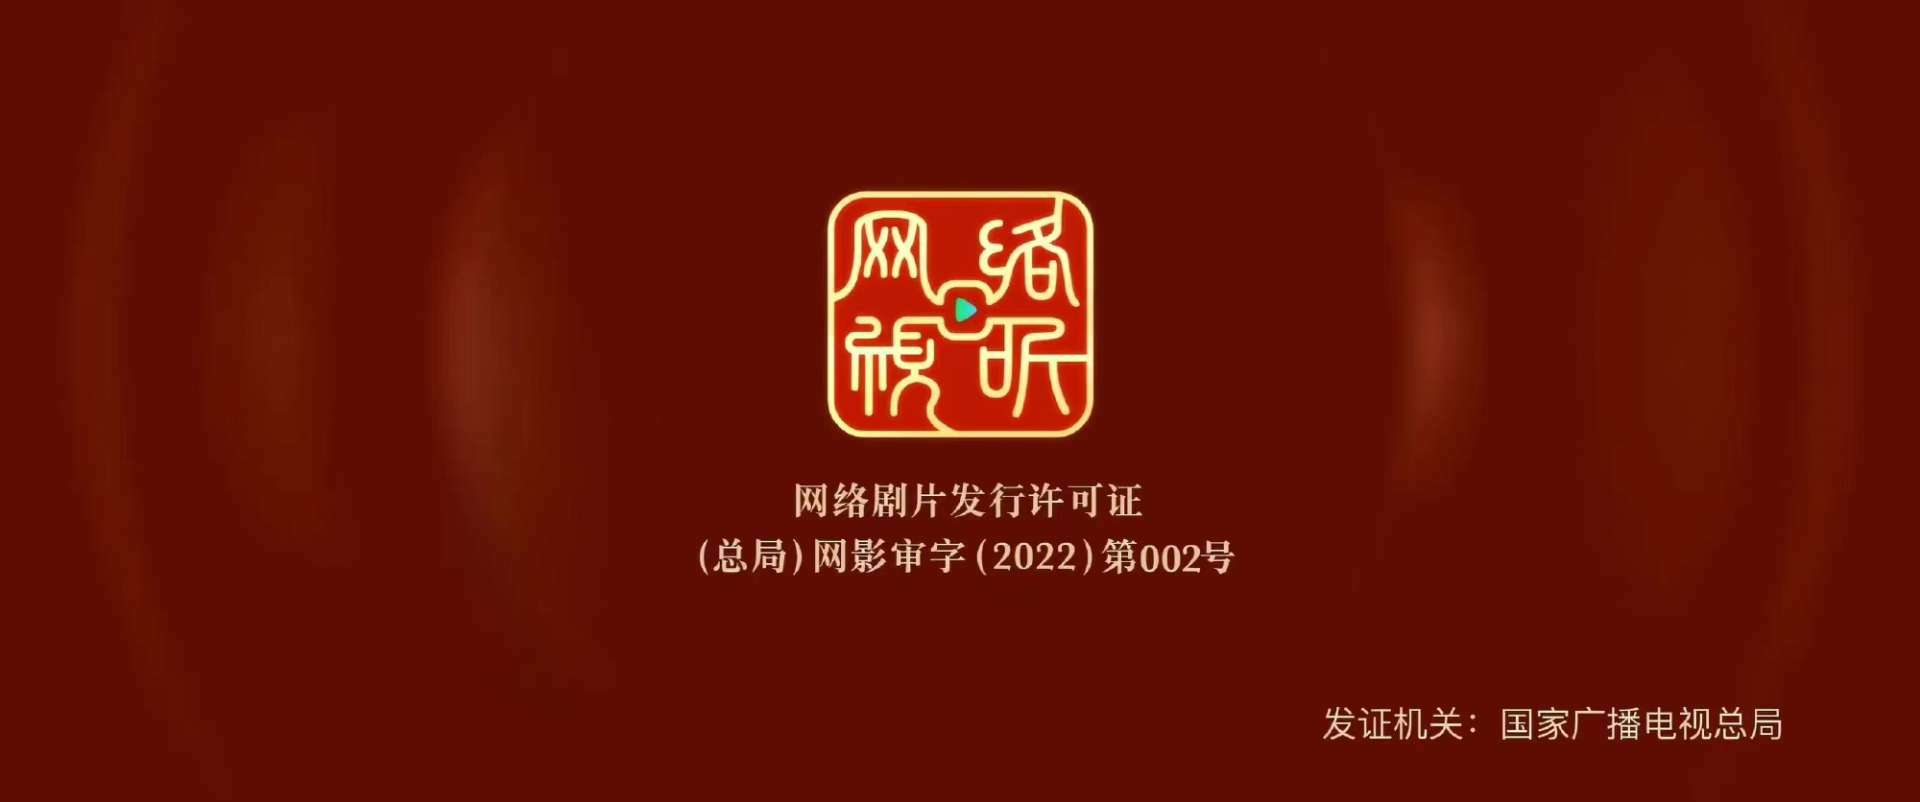 广电总局推出网络剧片发行许可证 《对决》成第一部获标网剧